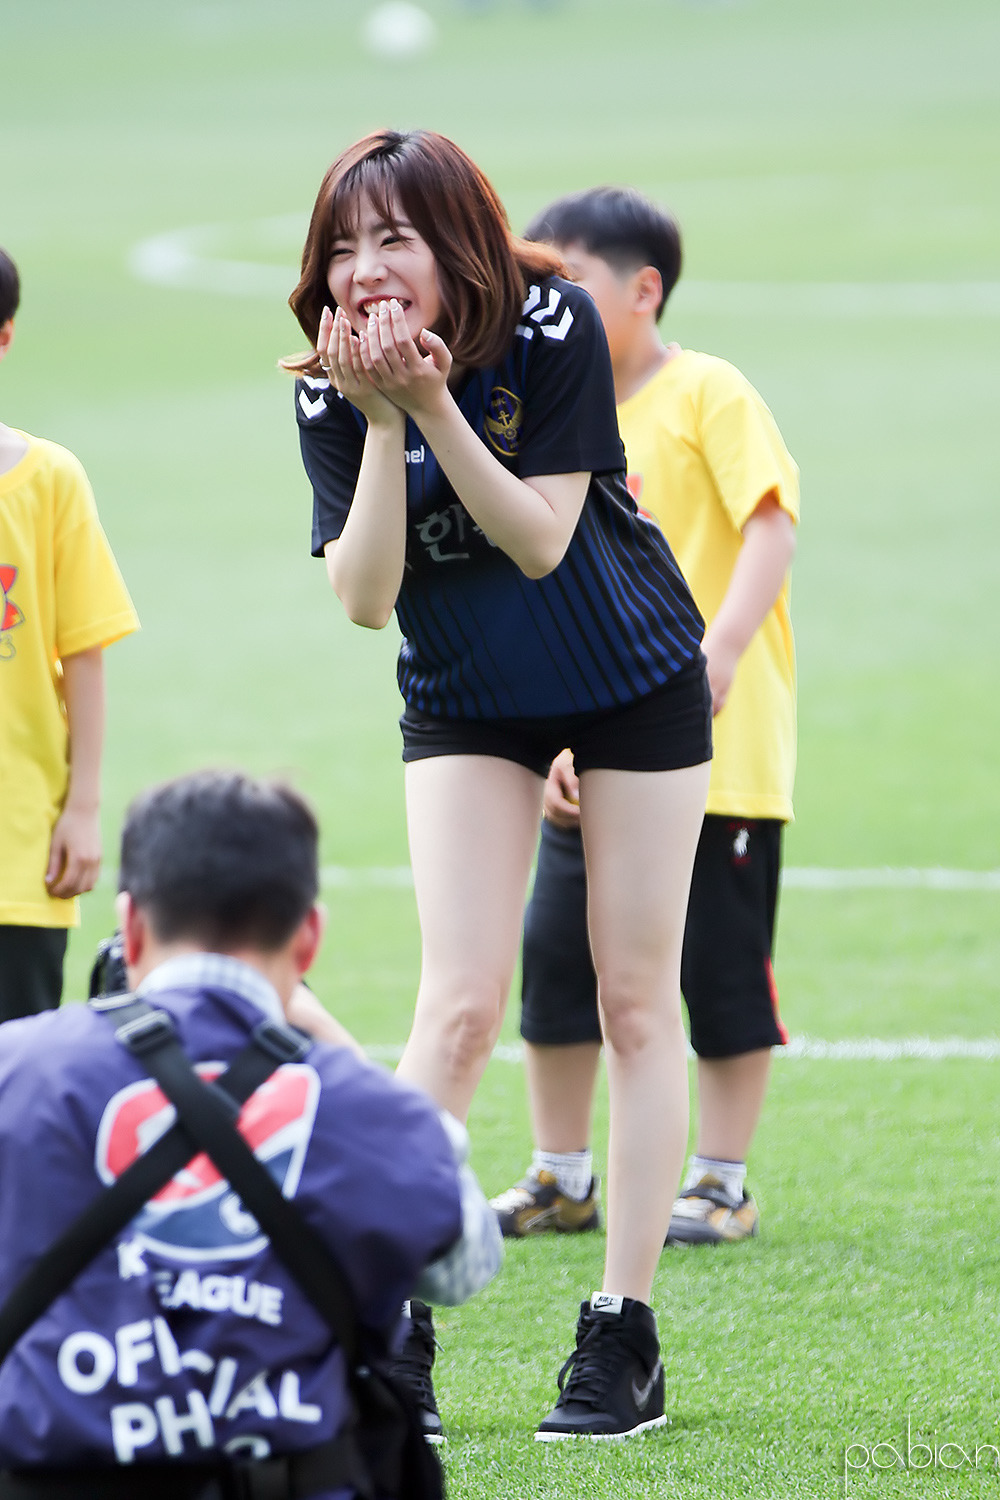 [PIC][22-05-2016]Sunny tham dự sự kiện "Shinhan Bank Vietnam & Korea Festival"  tại SVĐ Incheon Football Stadium vào hôm nay 211A5D3B5742EB35158B9C